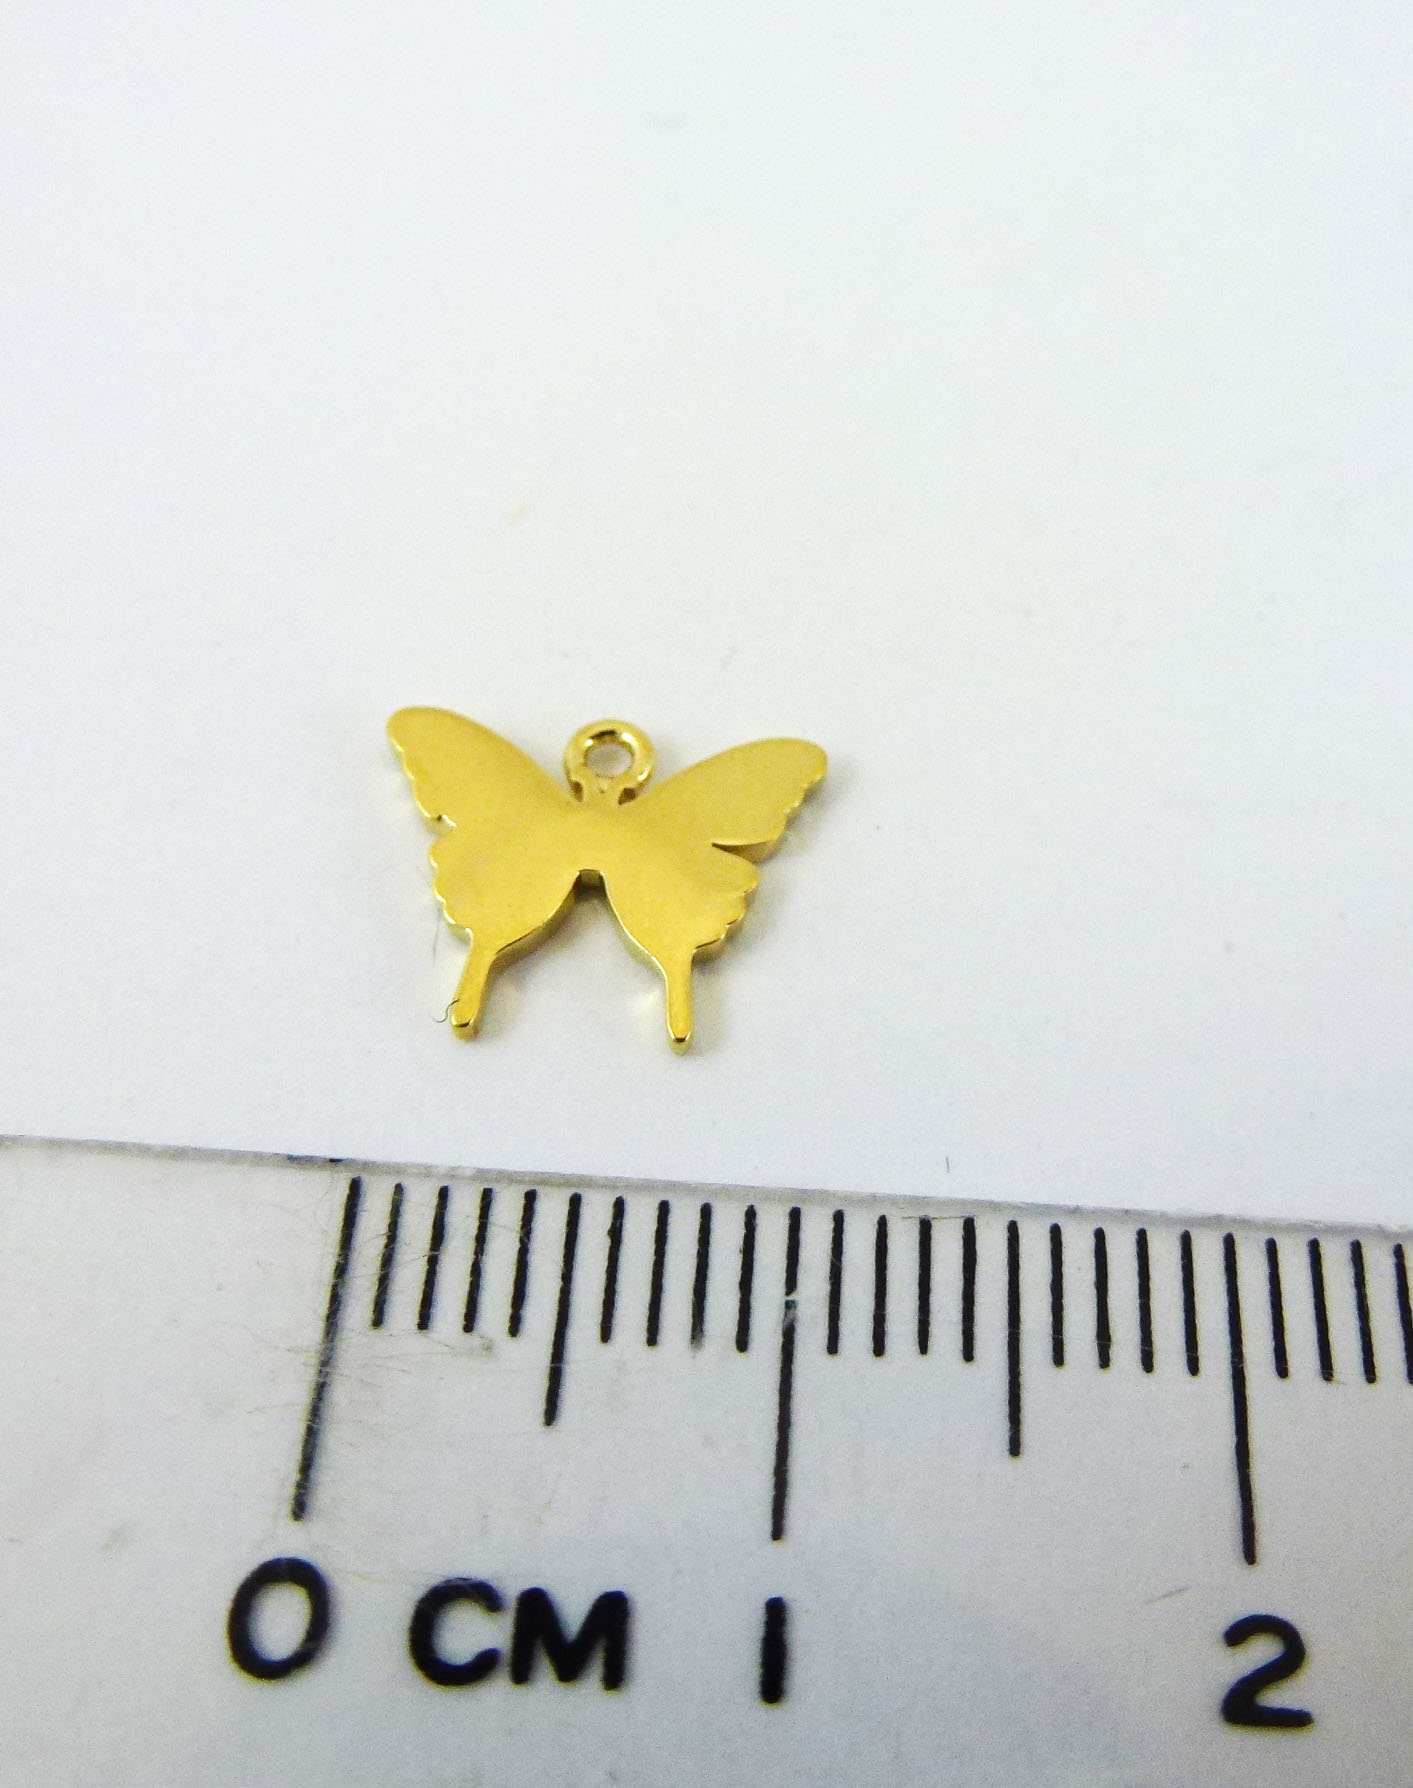 銅鍍金色單孔蝴蝶